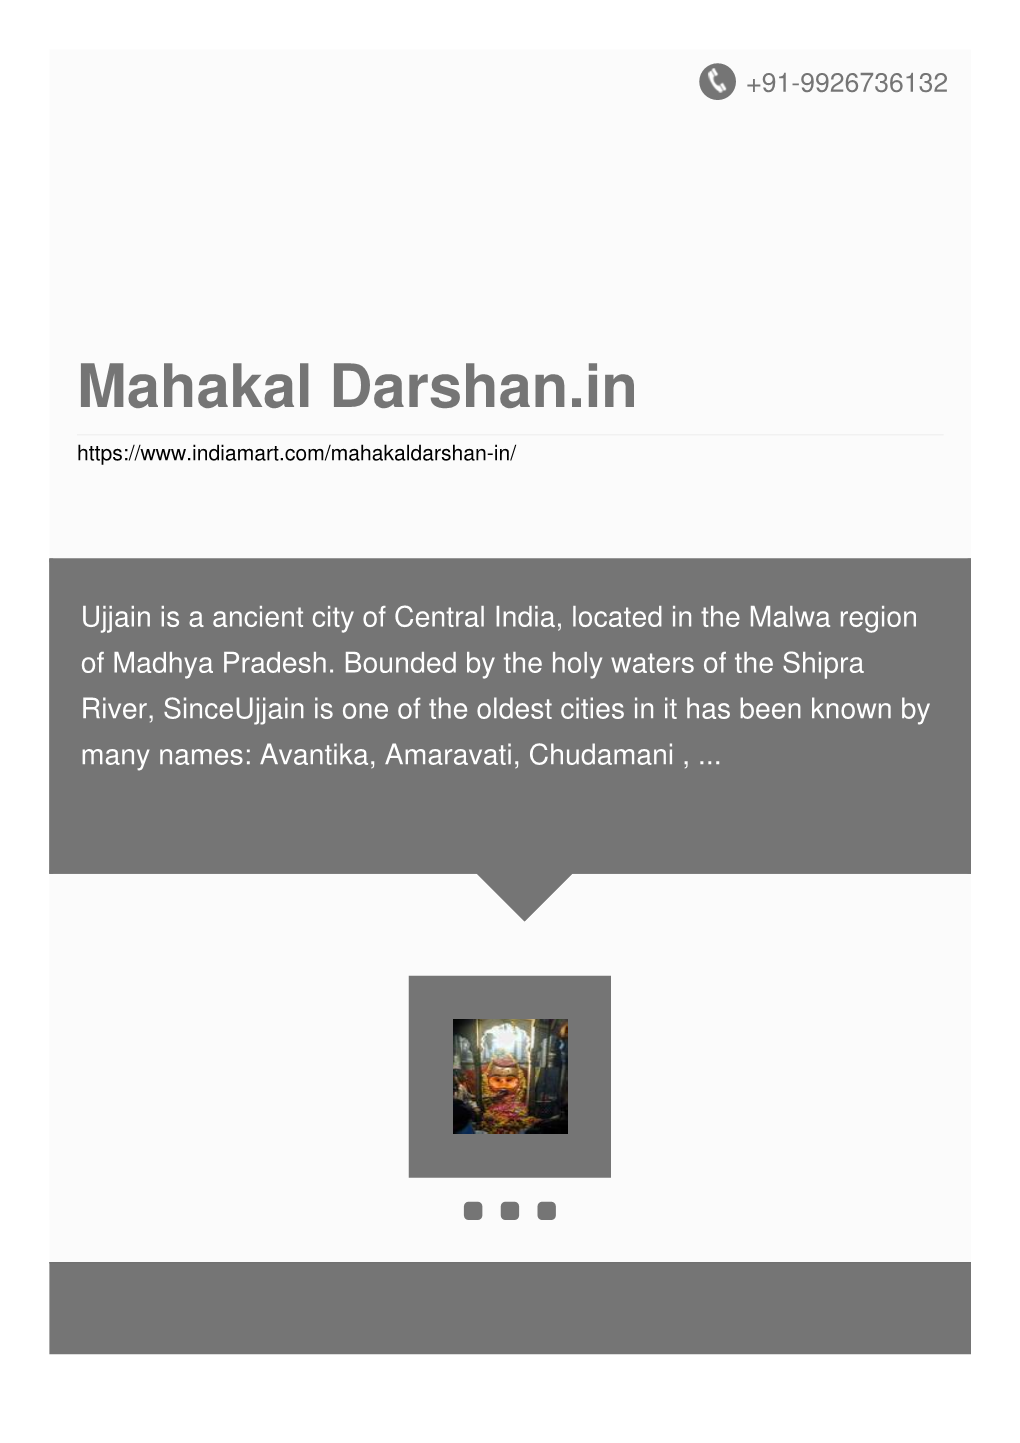 Mahakal Darshan.In